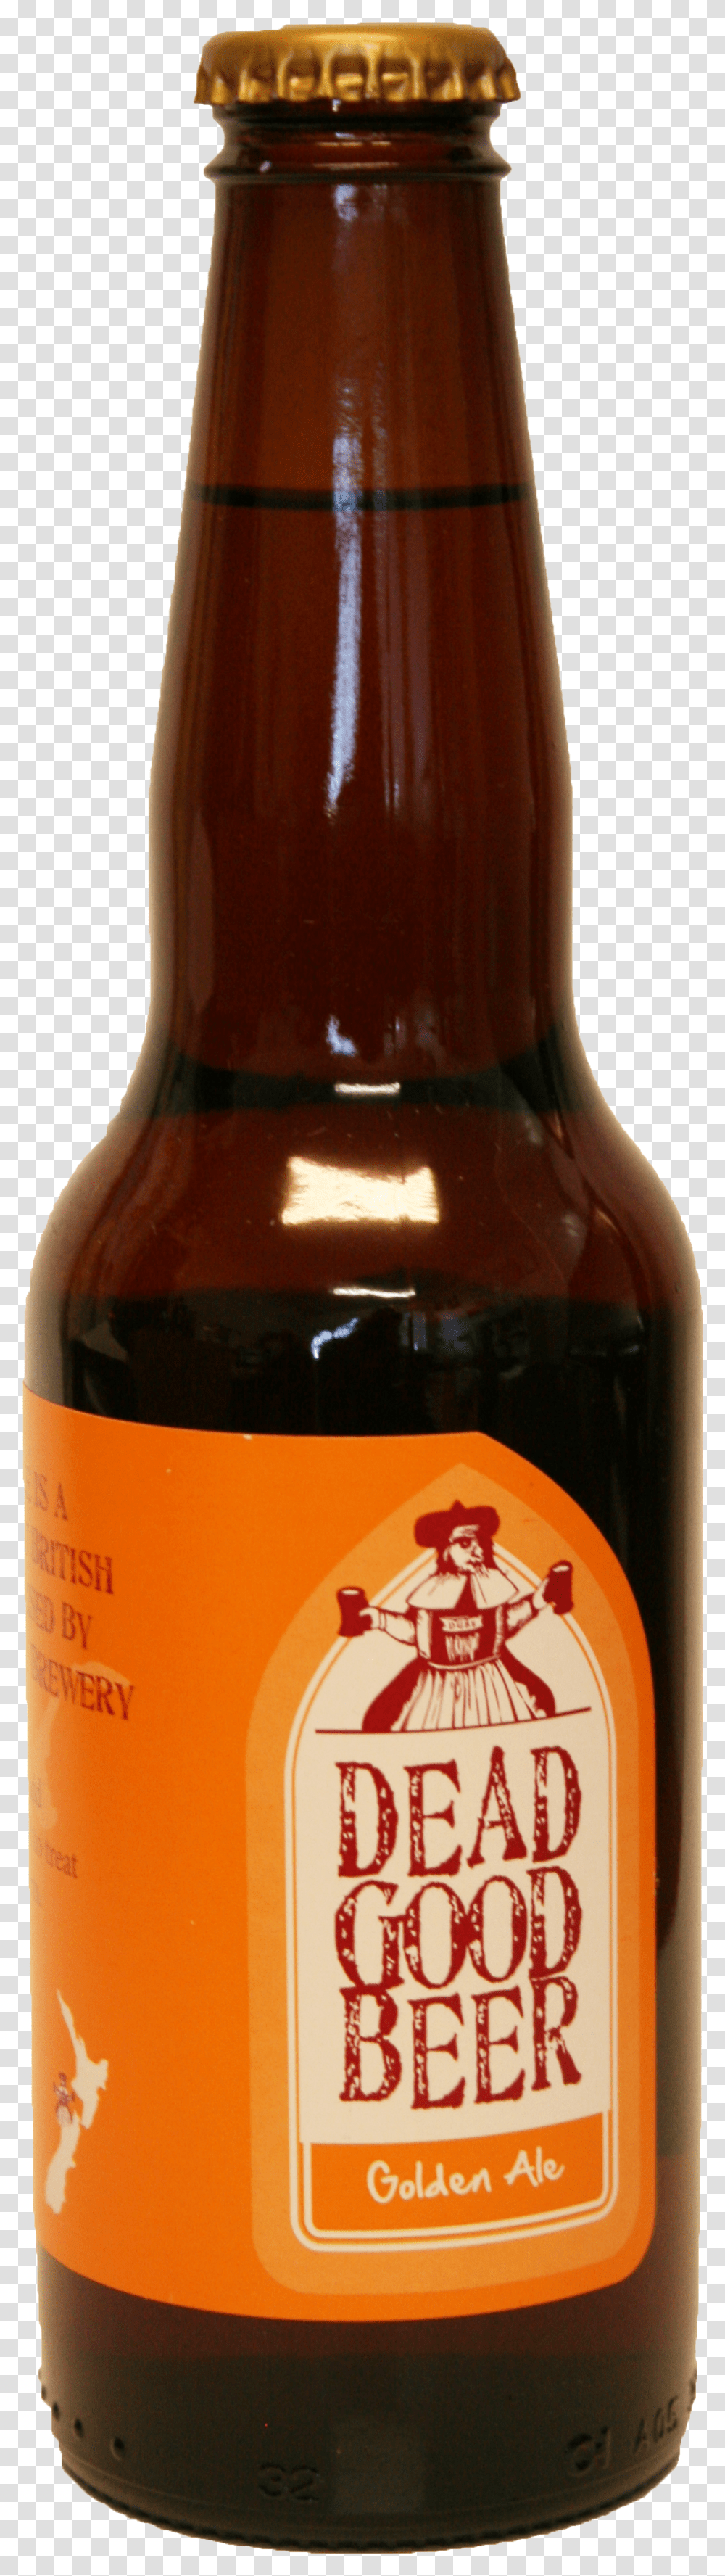 Beer Bottle Image Butilka Piva Na Prozrachnom Fone Transparent Png